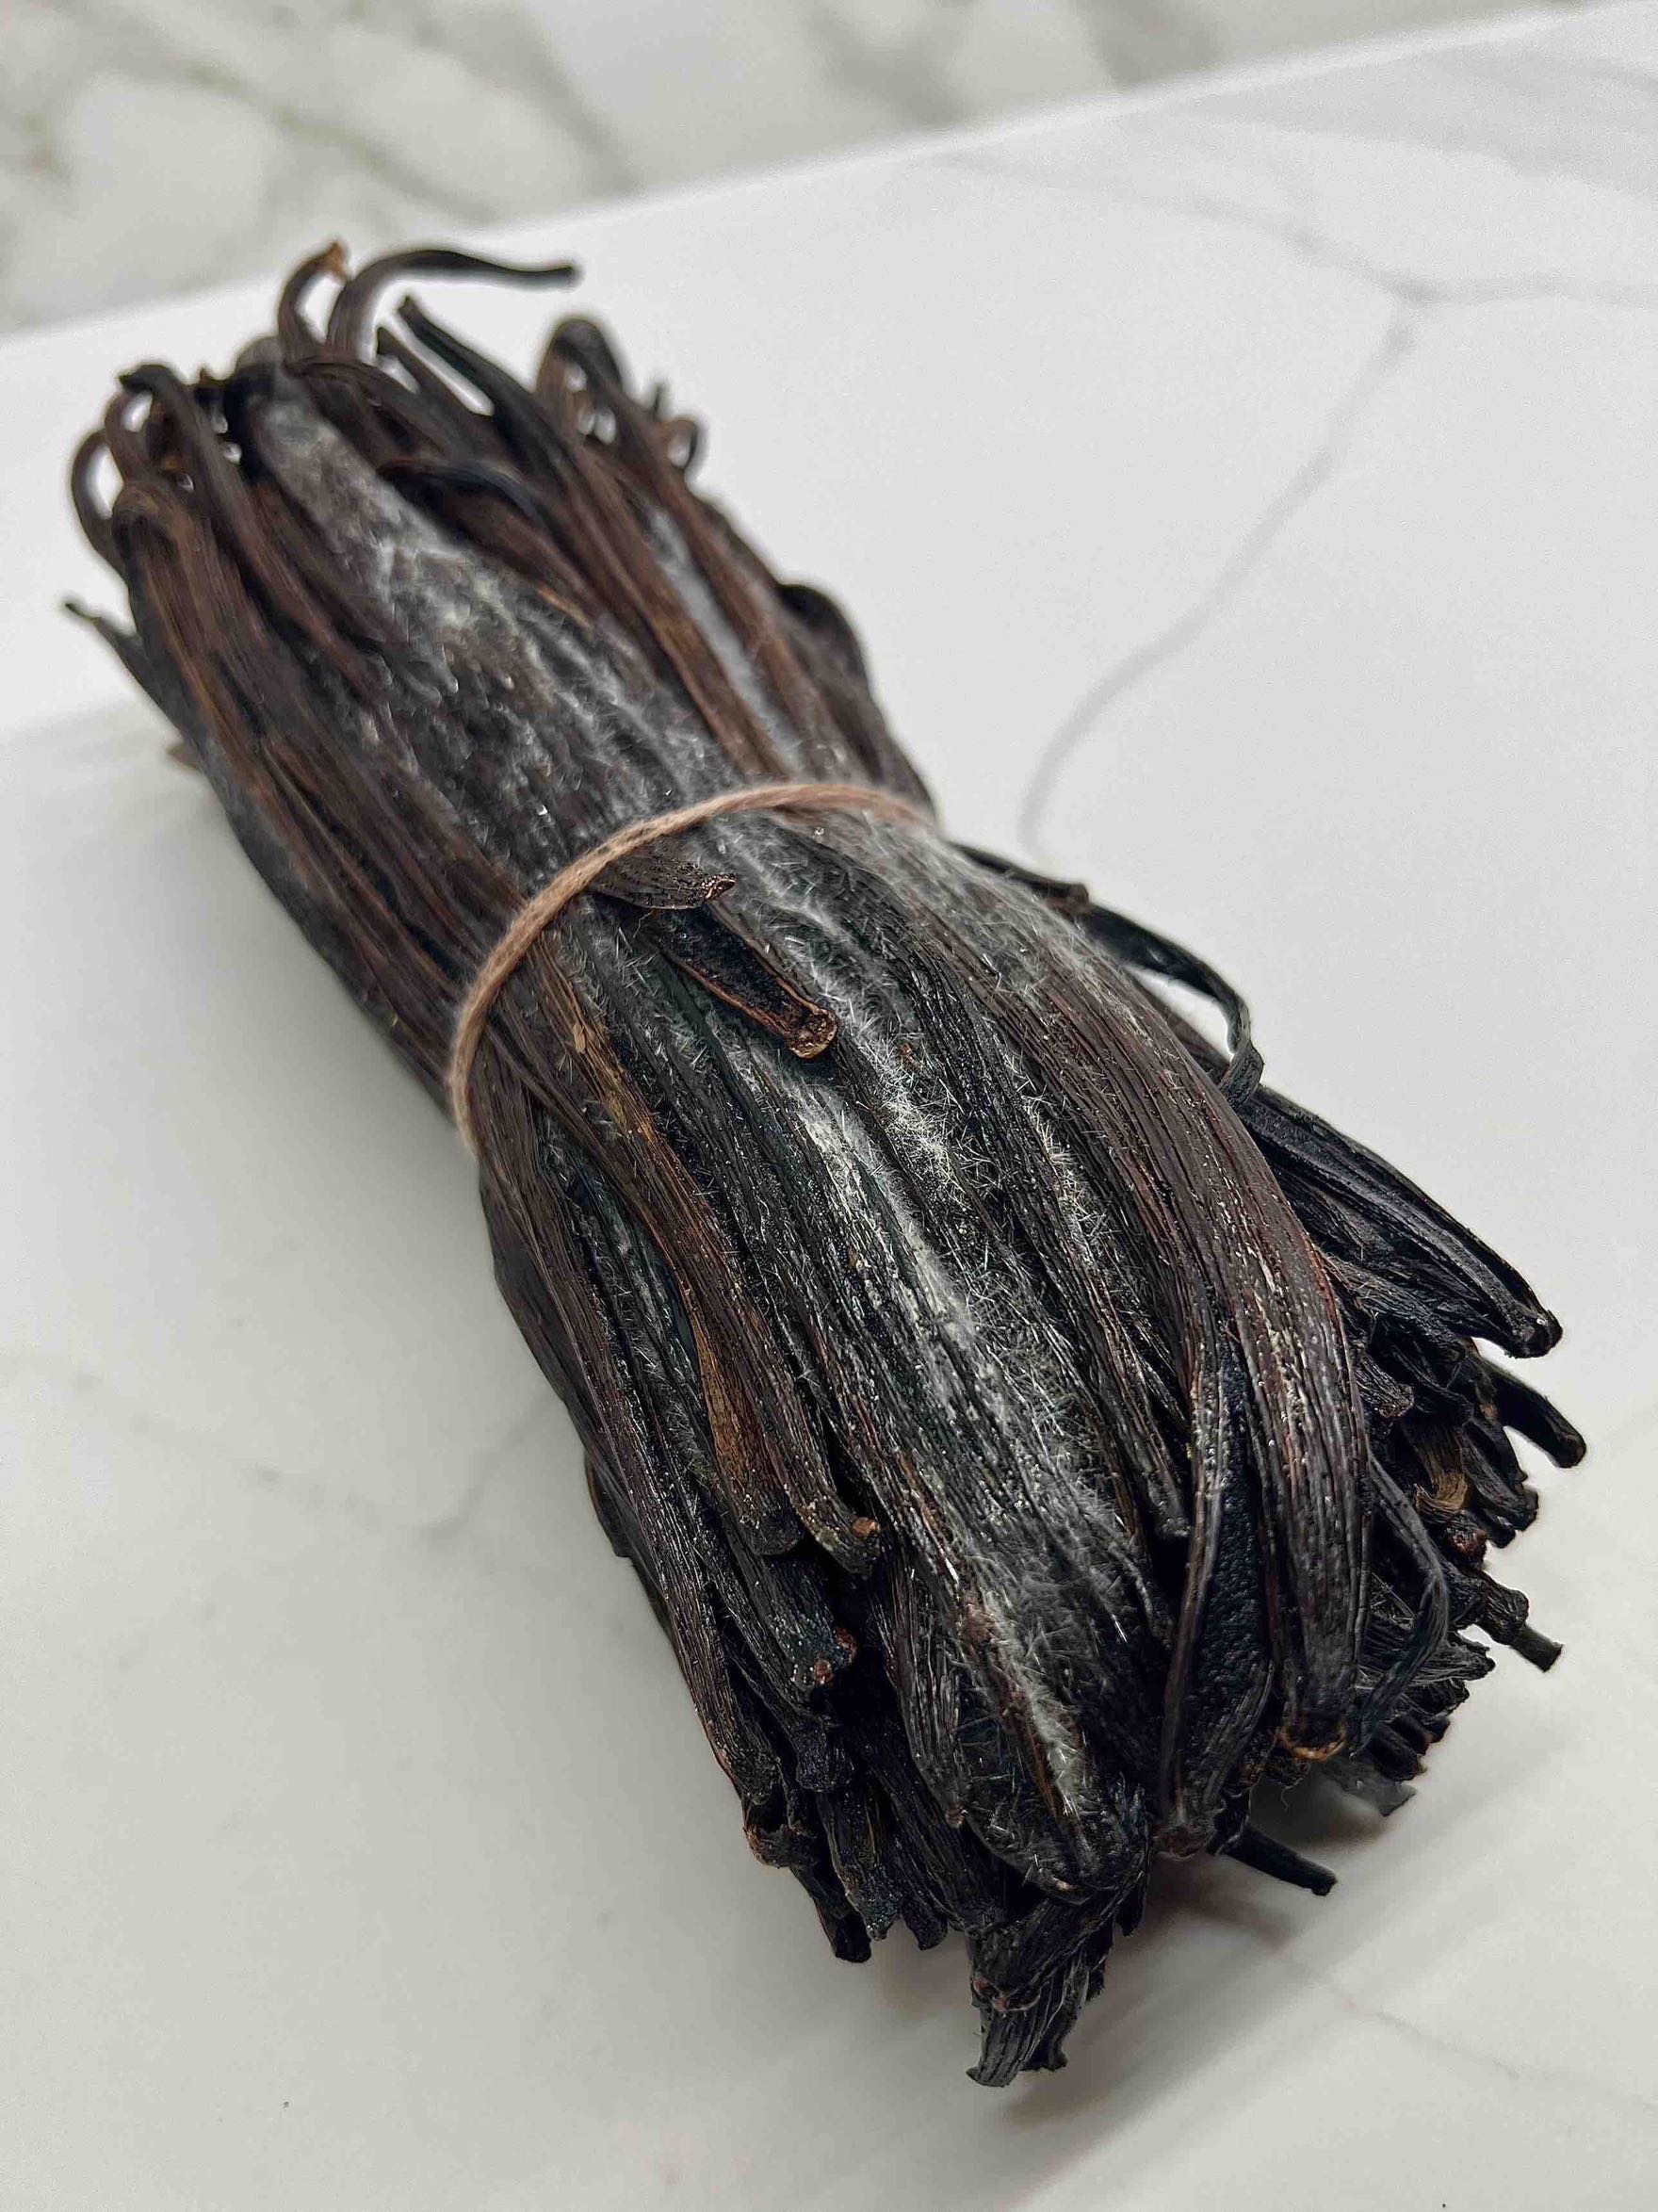 Vanille noire Planifolia 2 gousses en tube en verre